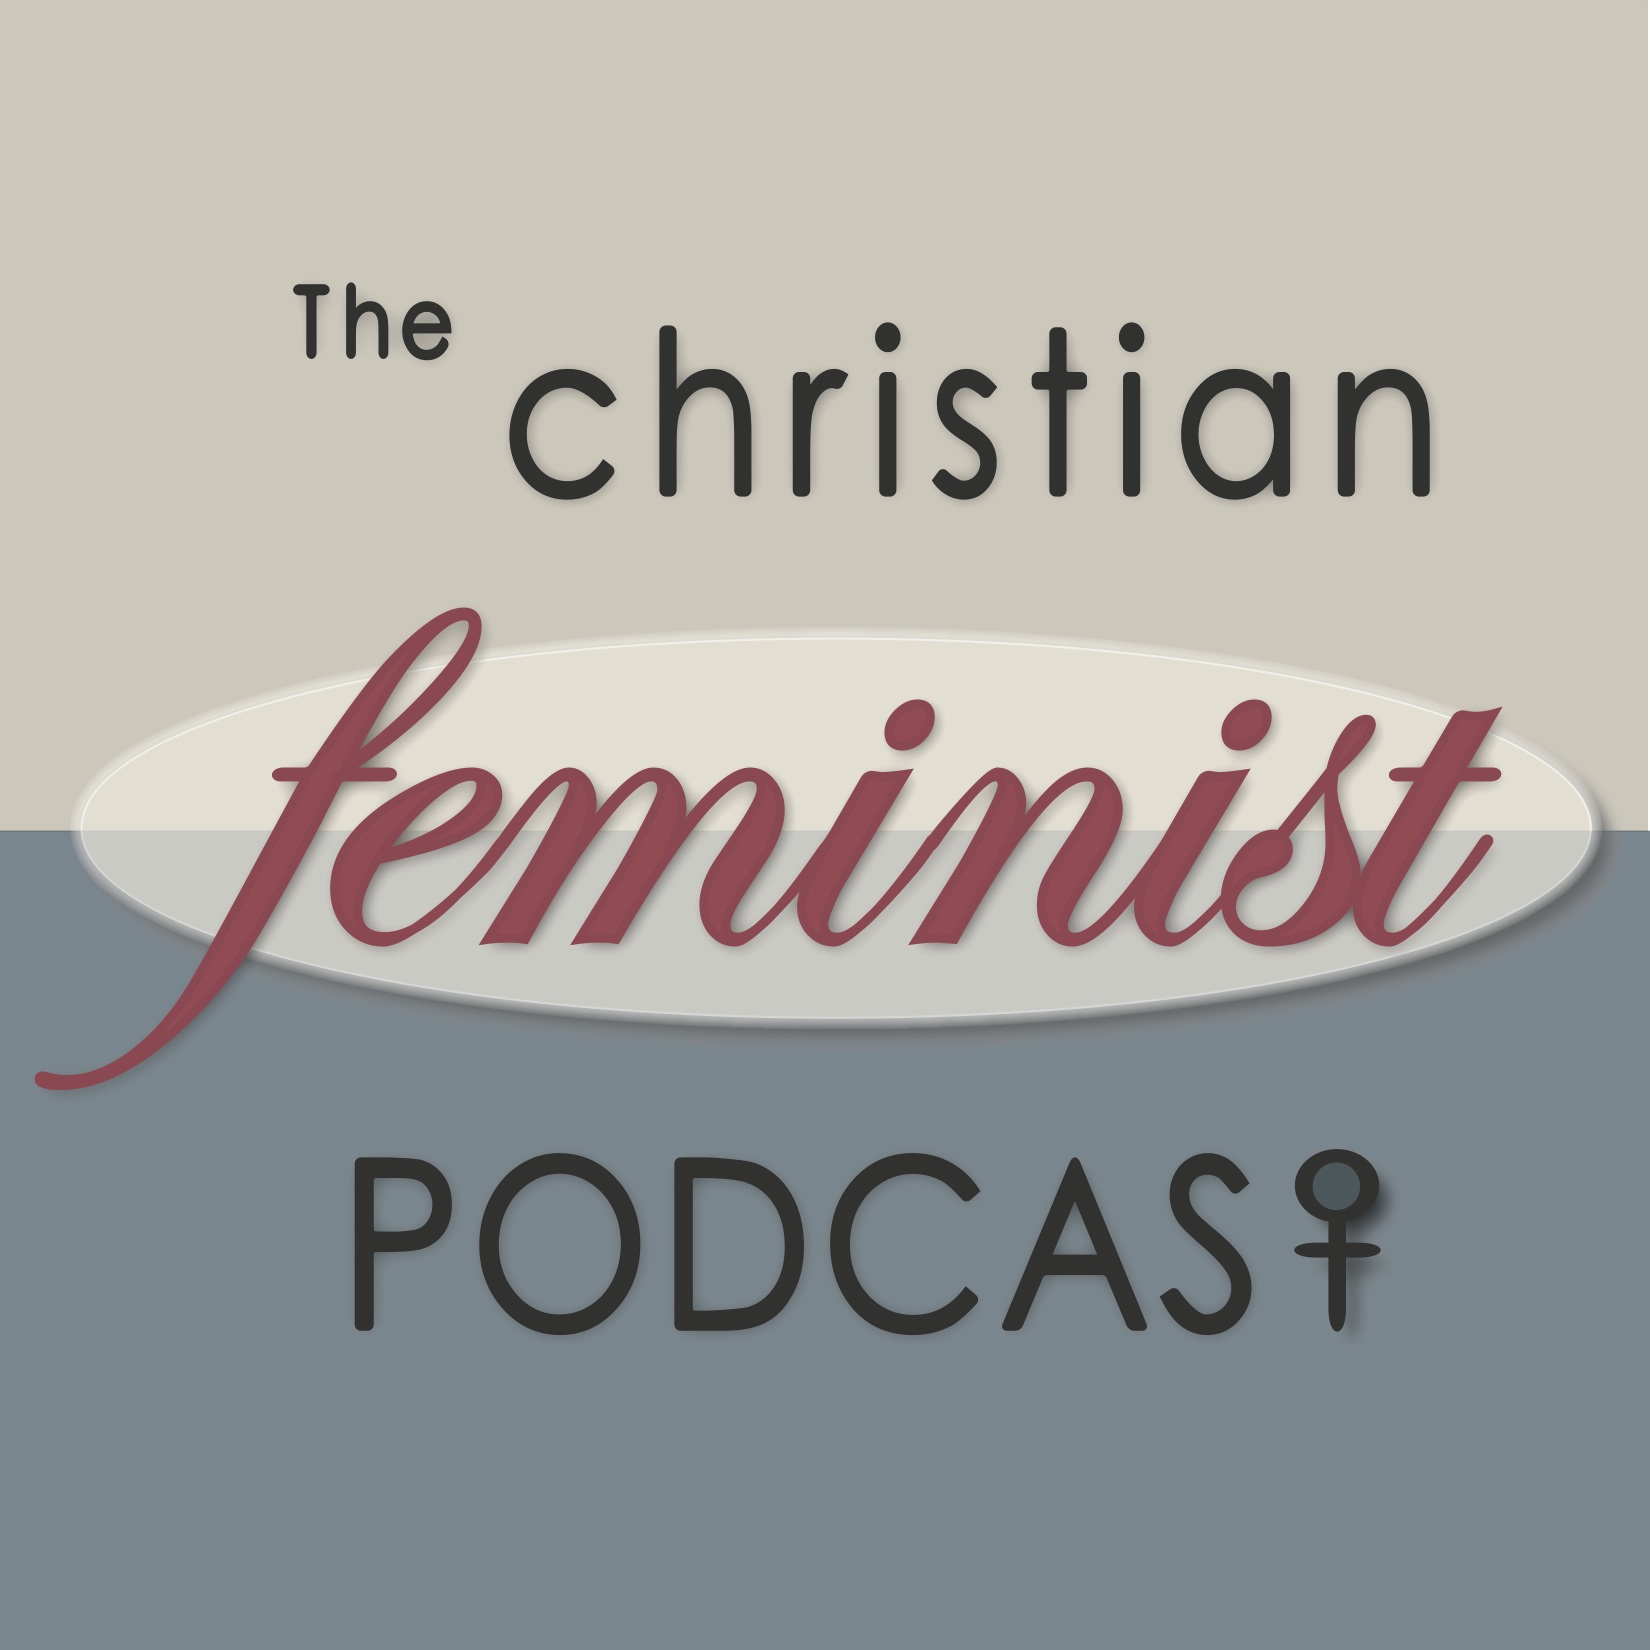 The Christian Feminist Podcast